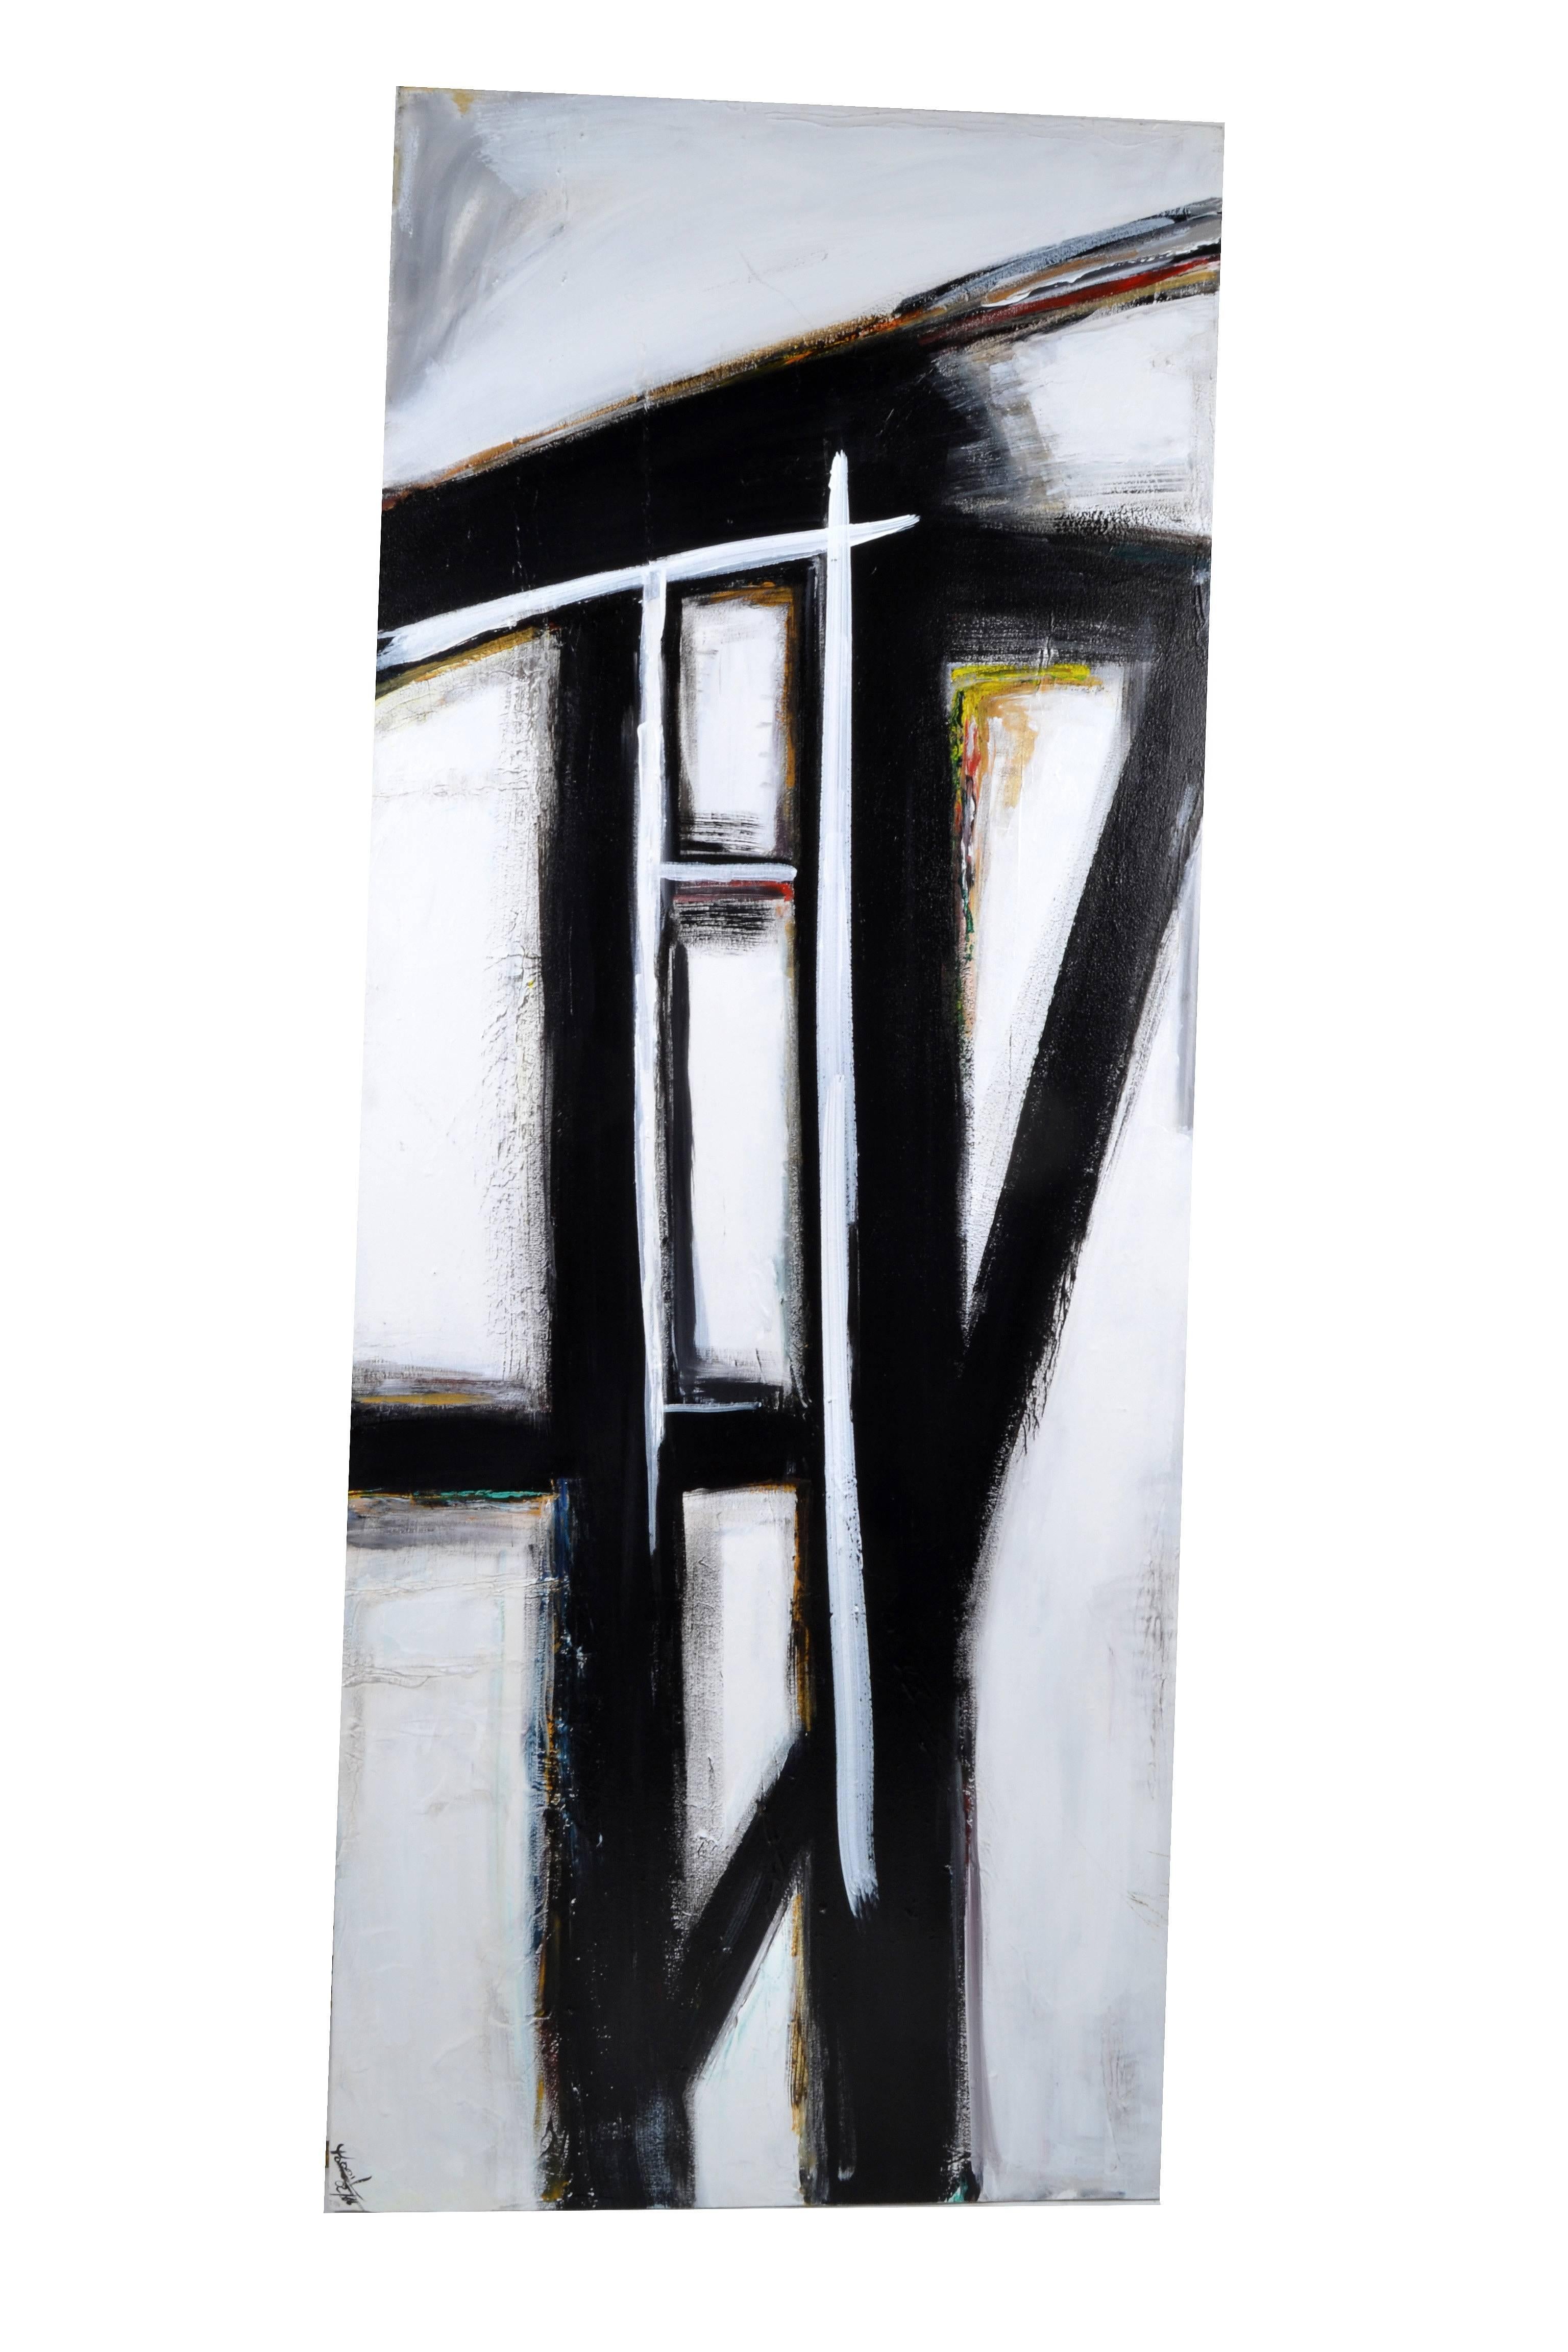 Yamil O Cardenas abstraktes expressionistisches Gemälde in Acryl auf Leinwand.
Yamil O Cardenas wurde 1972 in Kuba geboren und zog vor kurzem nach Miami in den USA.
Als Heranwachsender fühlte er sich zu den Werken von Frank Kline hingezogen und